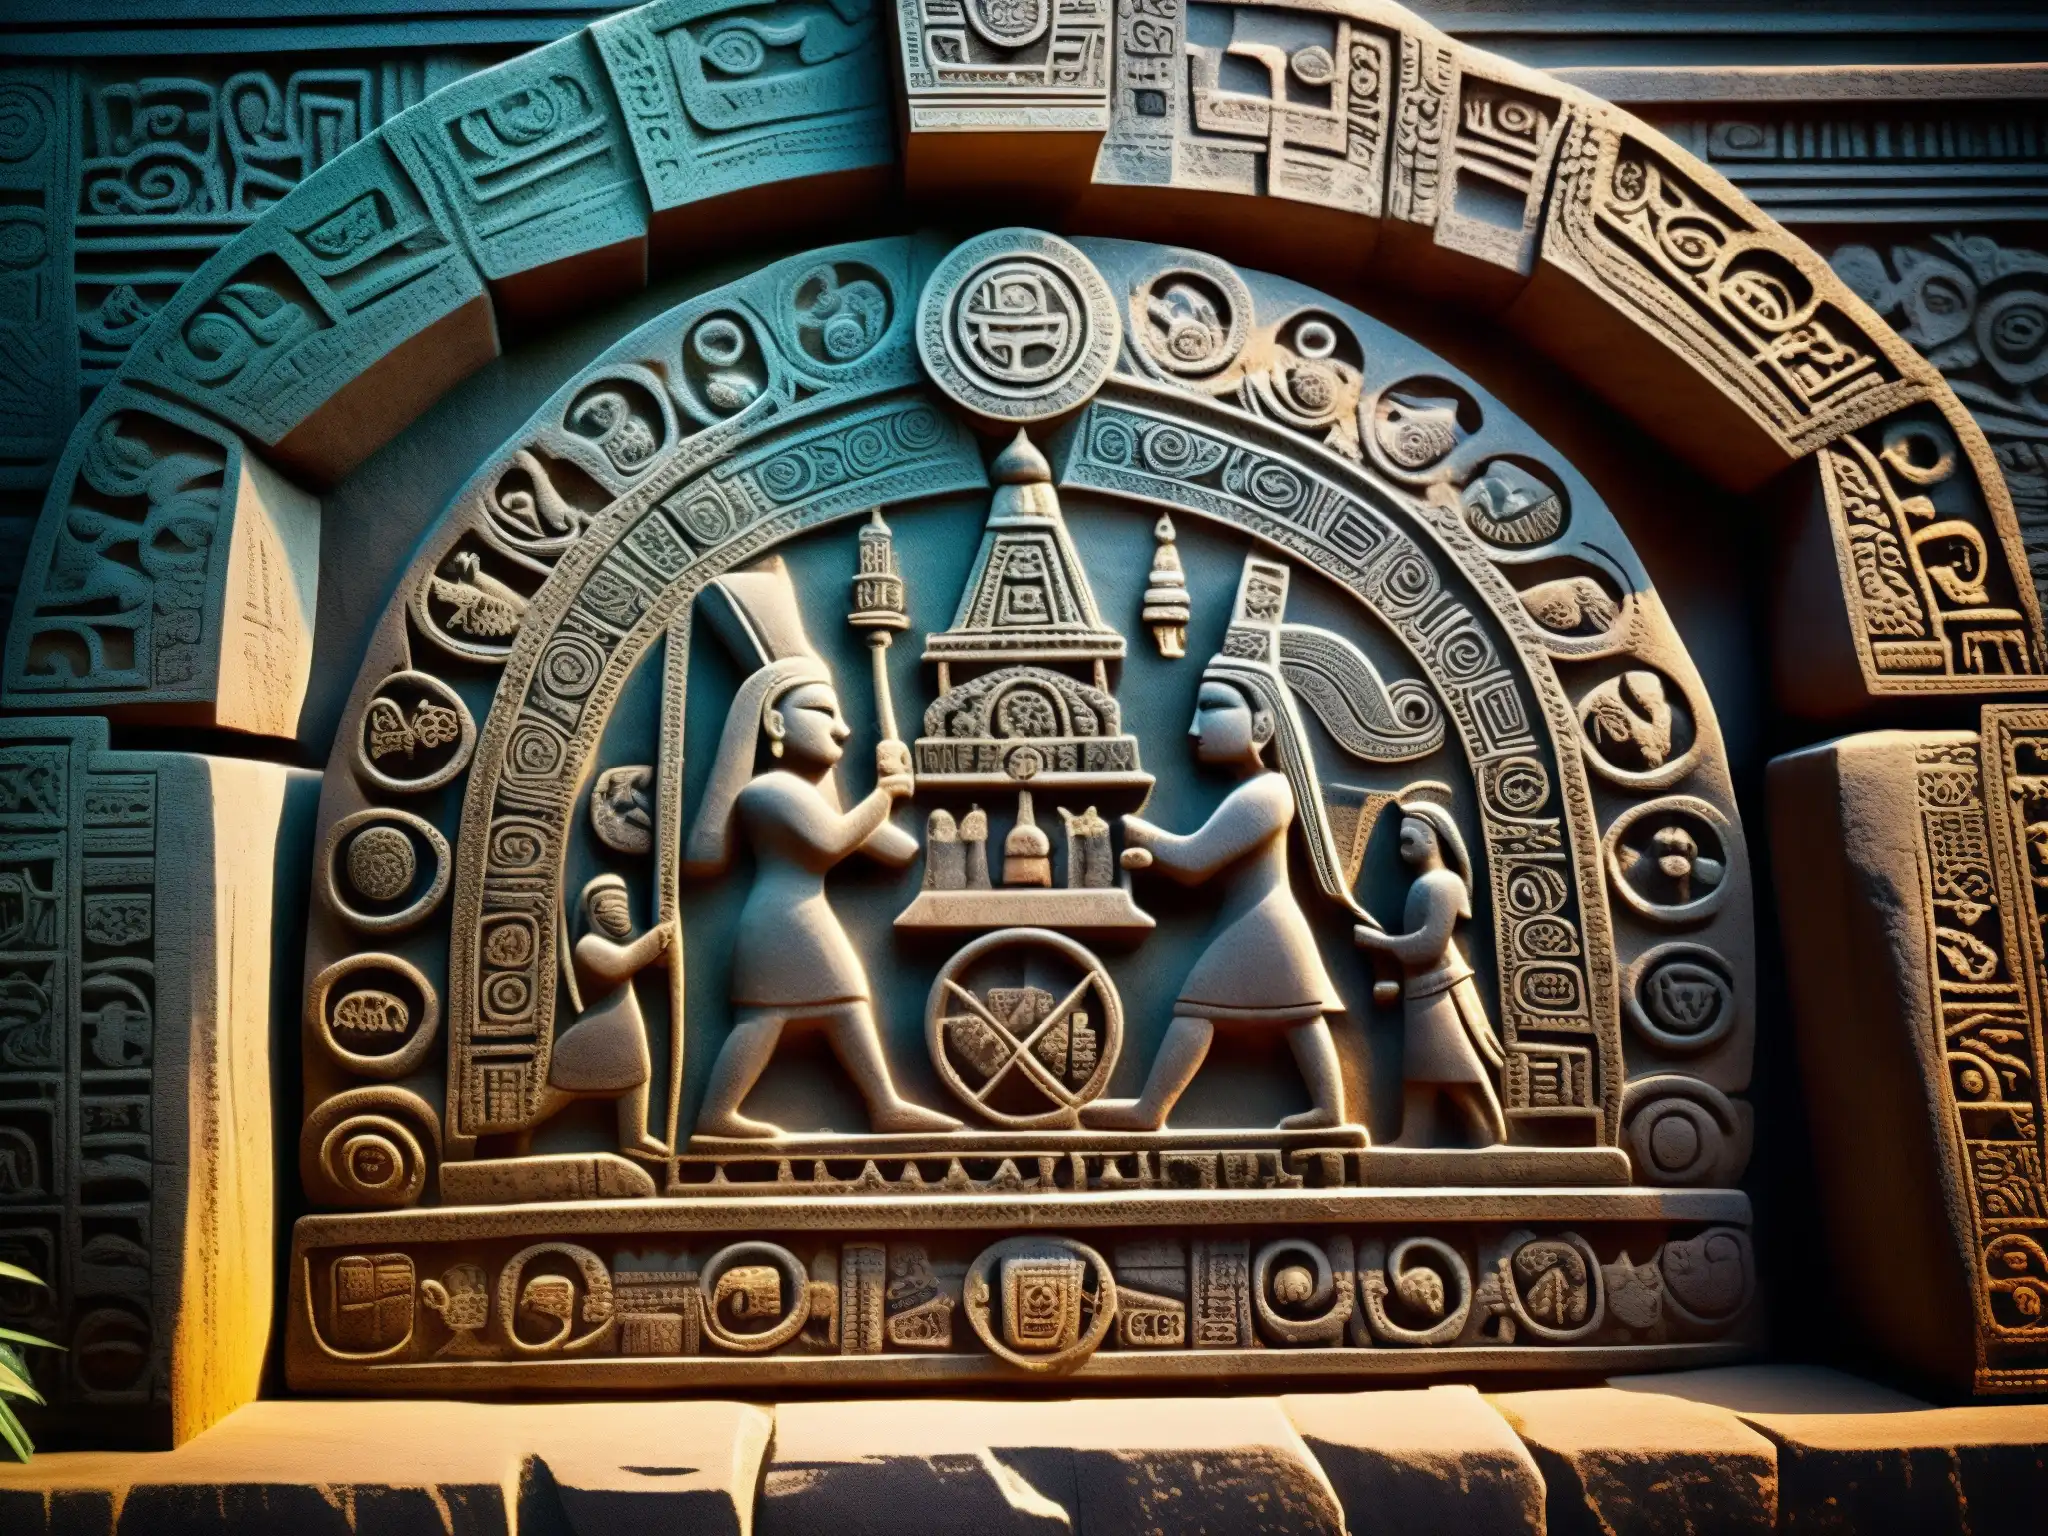 Imagen detallada de la enigmática Piedra Encantada de Tlalpan, revelando sus antiguos símbolos y figuras prehispánicas en una atmósfera misteriosa